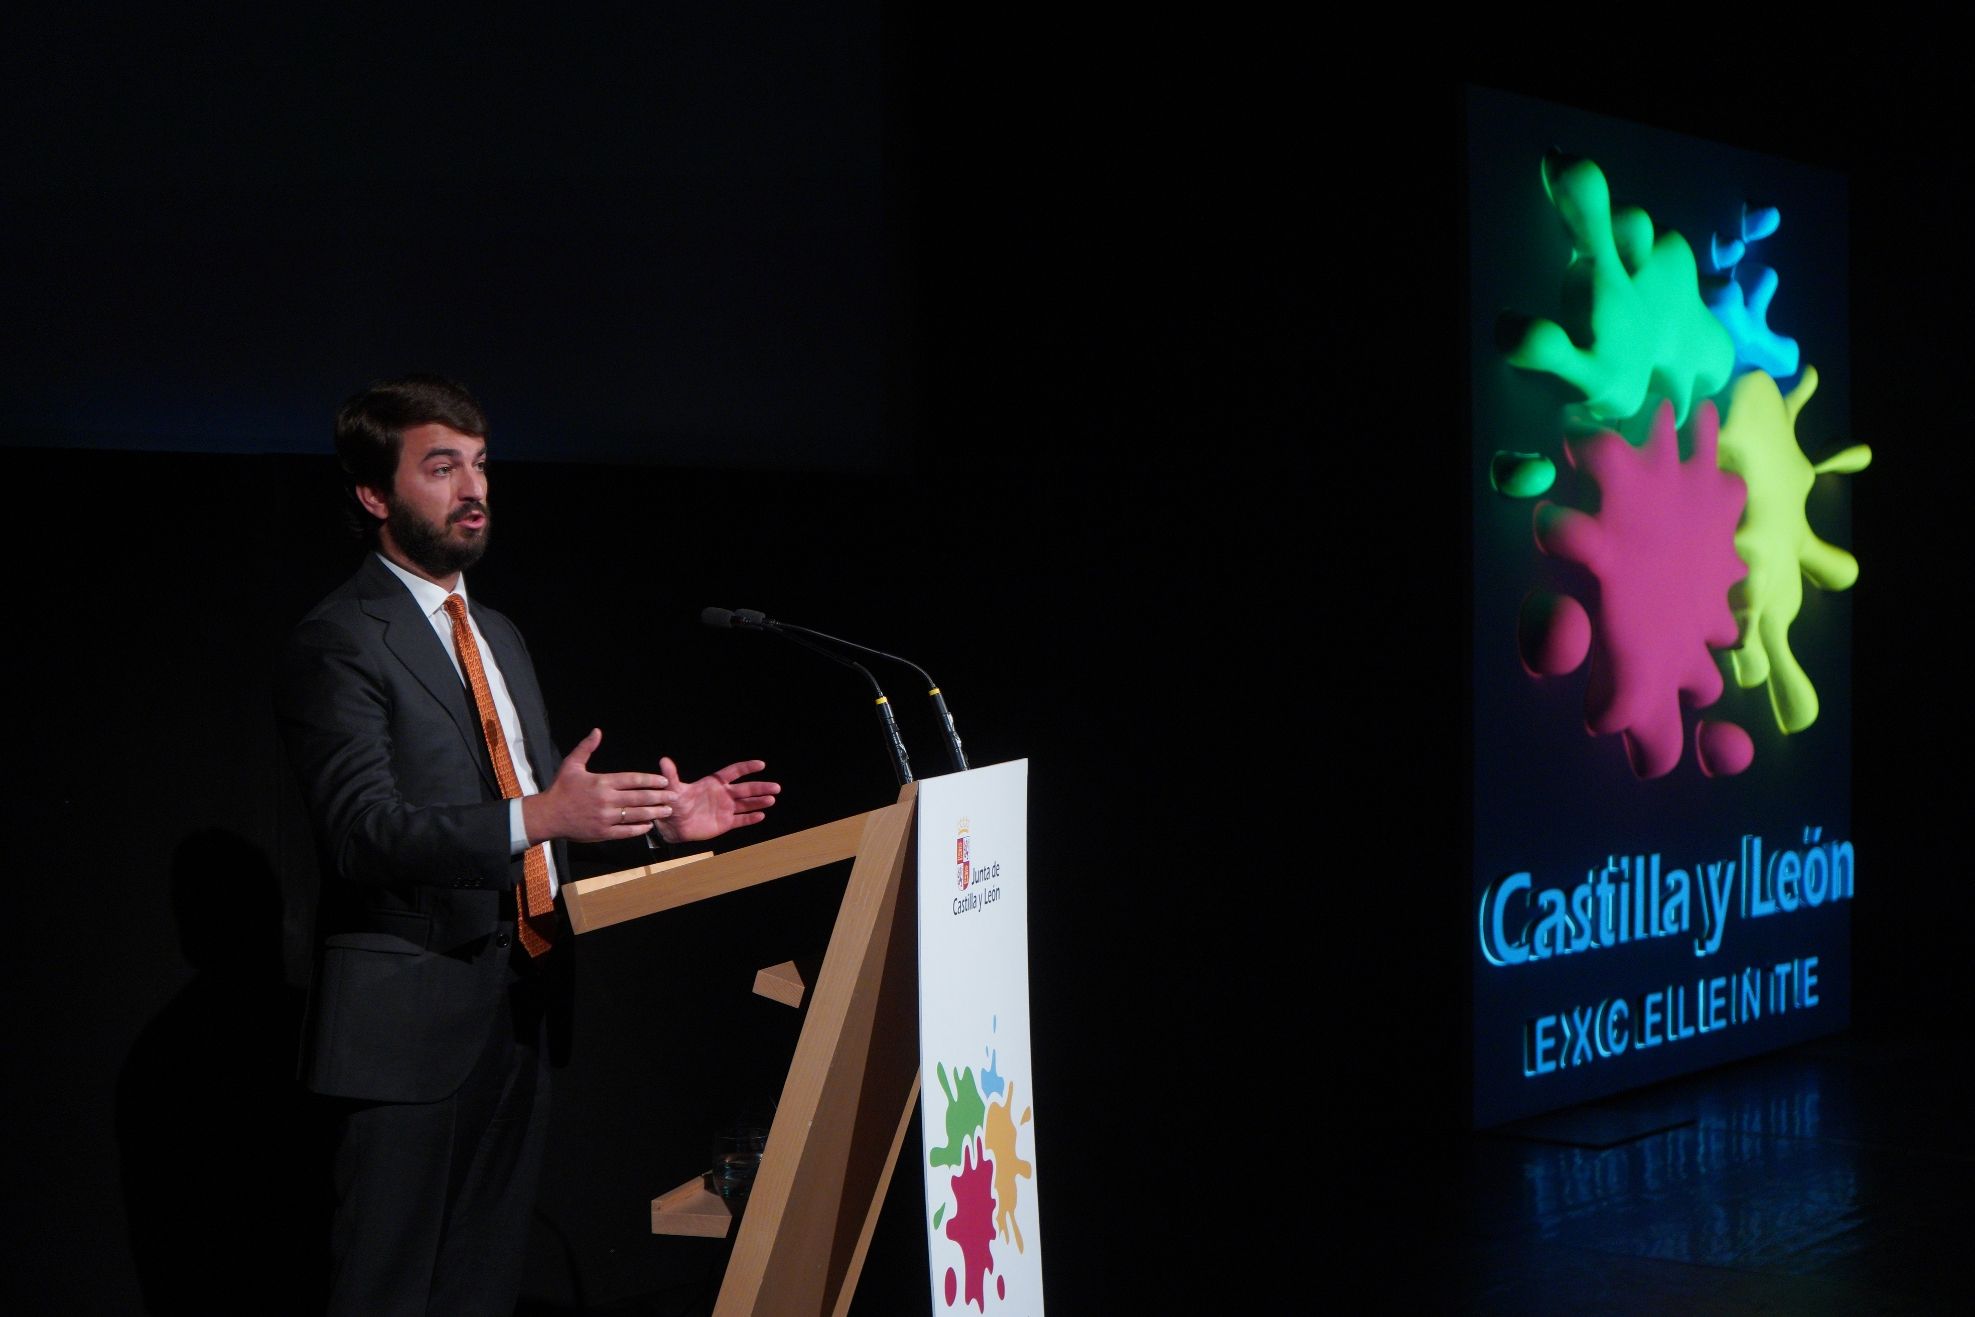 Juan Gallardo prensenta la nueva marca turistica Castilla y Leon Excelente